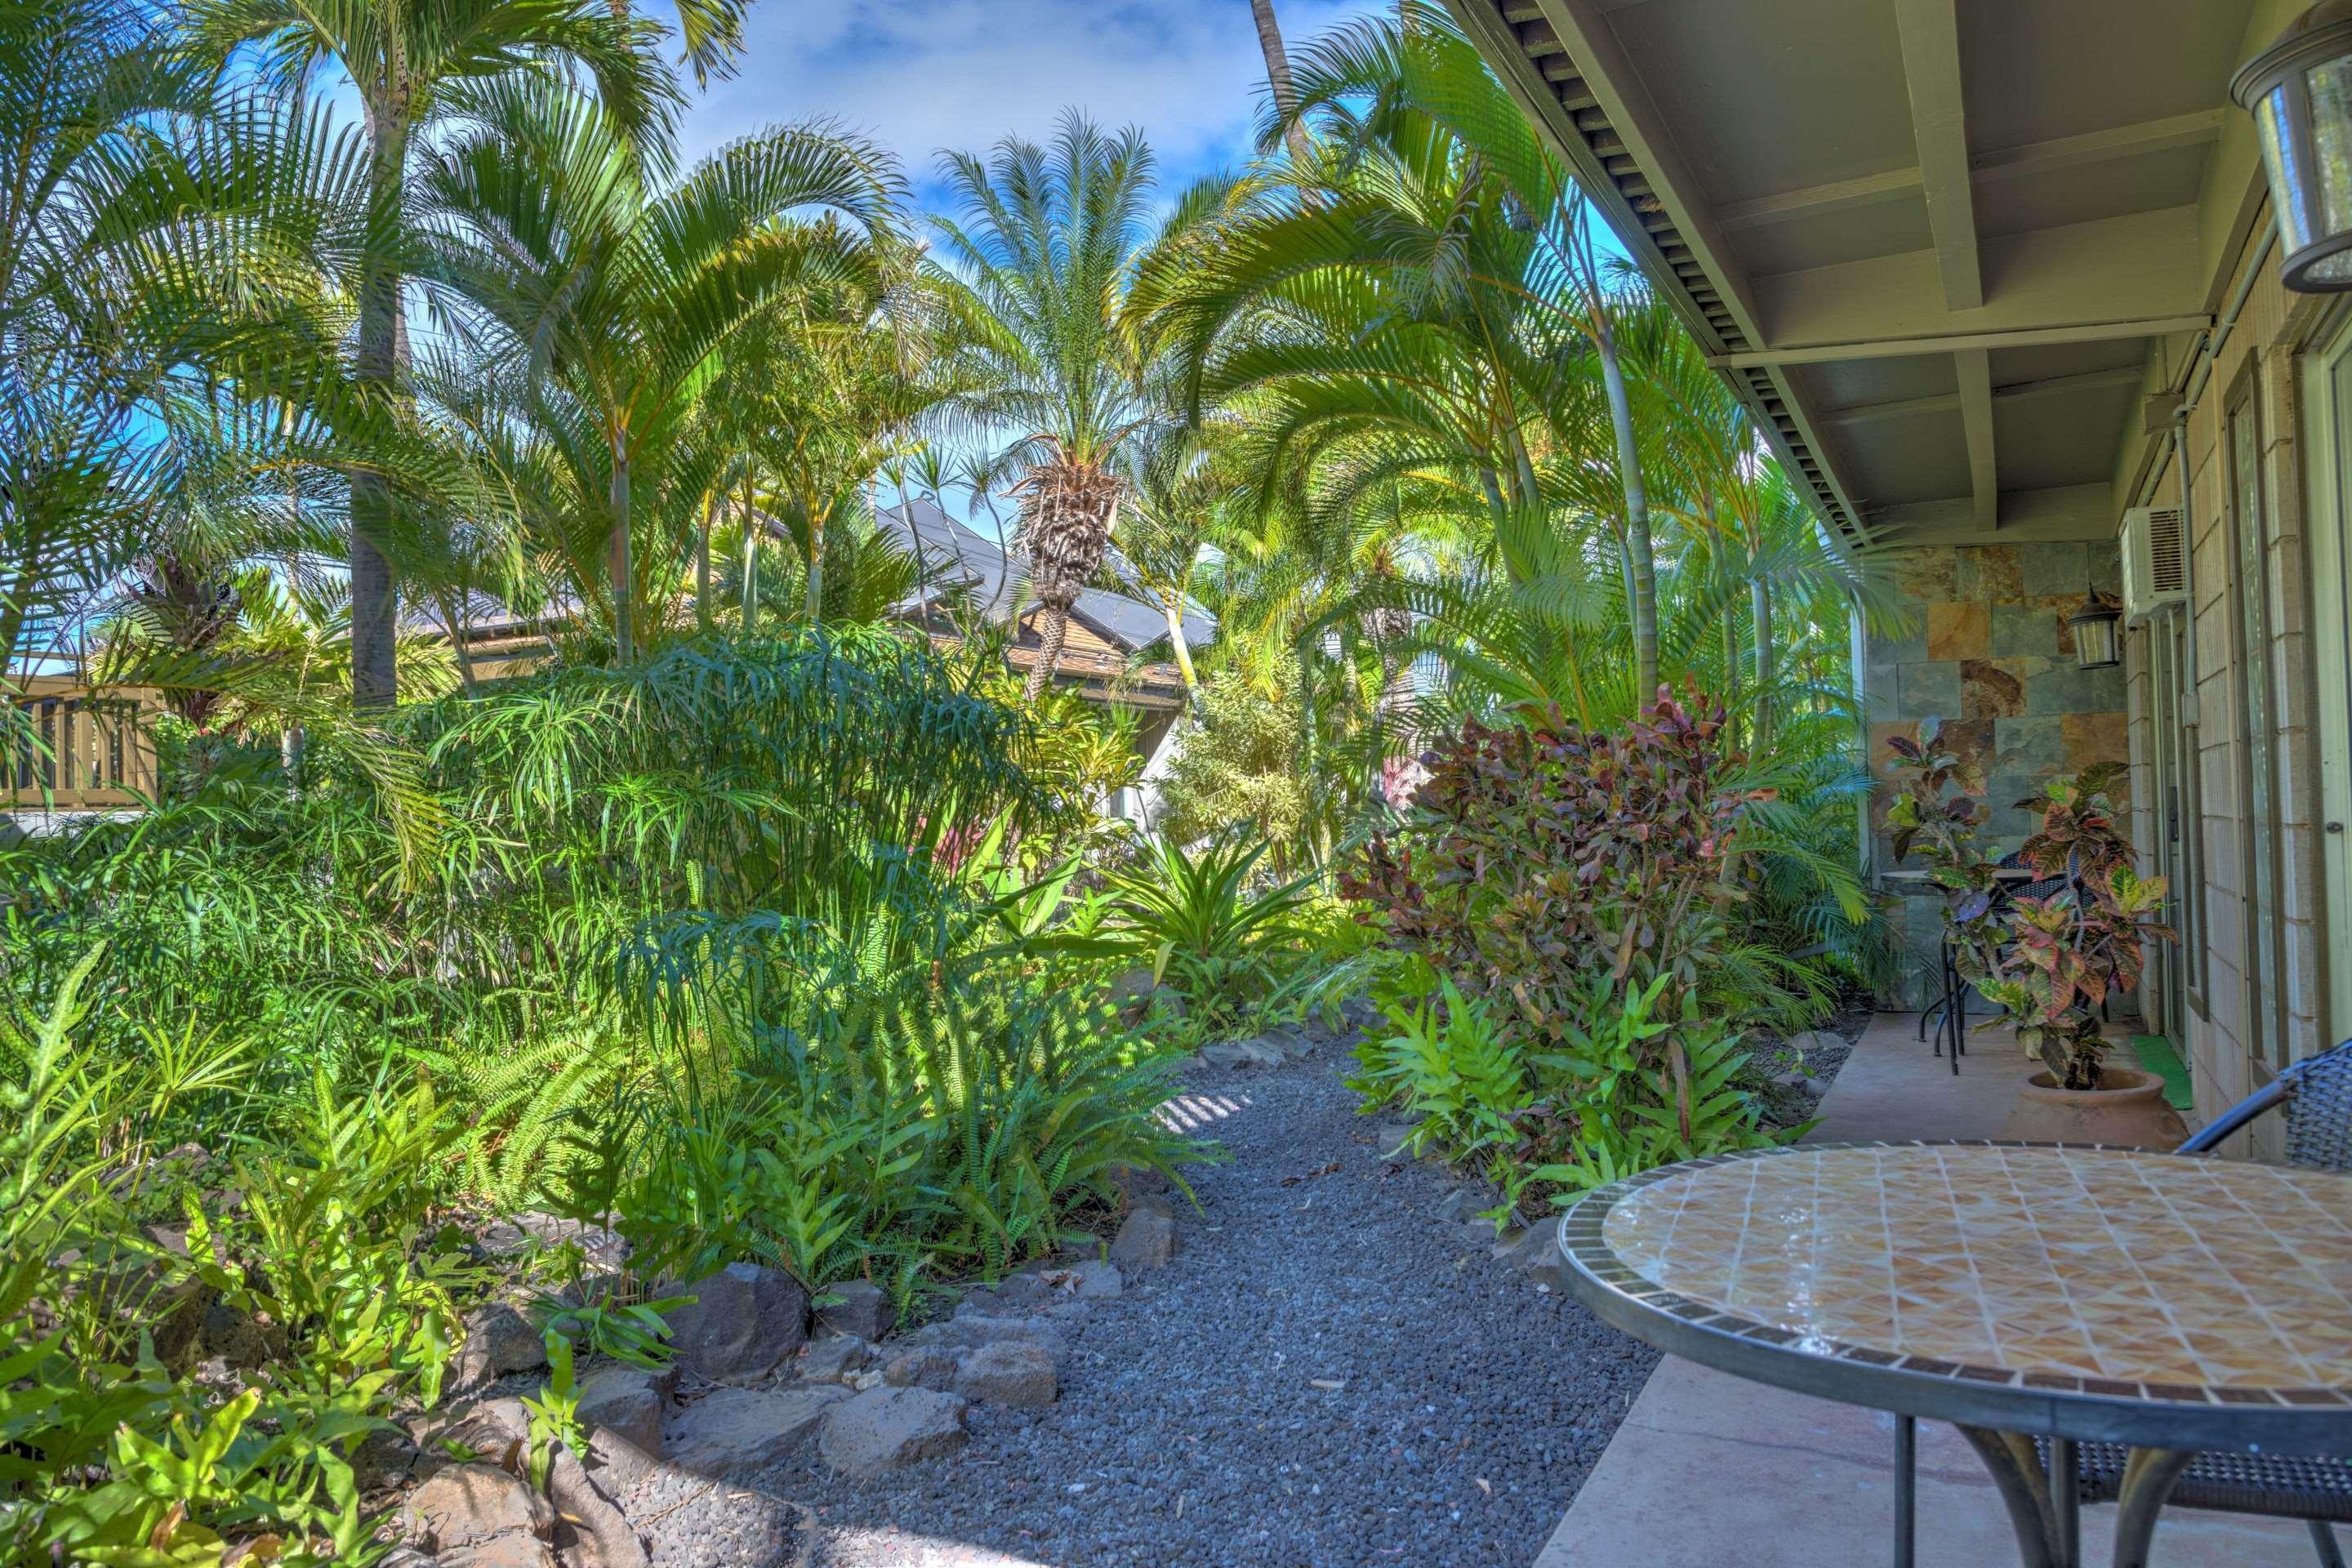 كيهي Kohea Kai Maui, Ascend Hotel Collection المظهر الخارجي الصورة